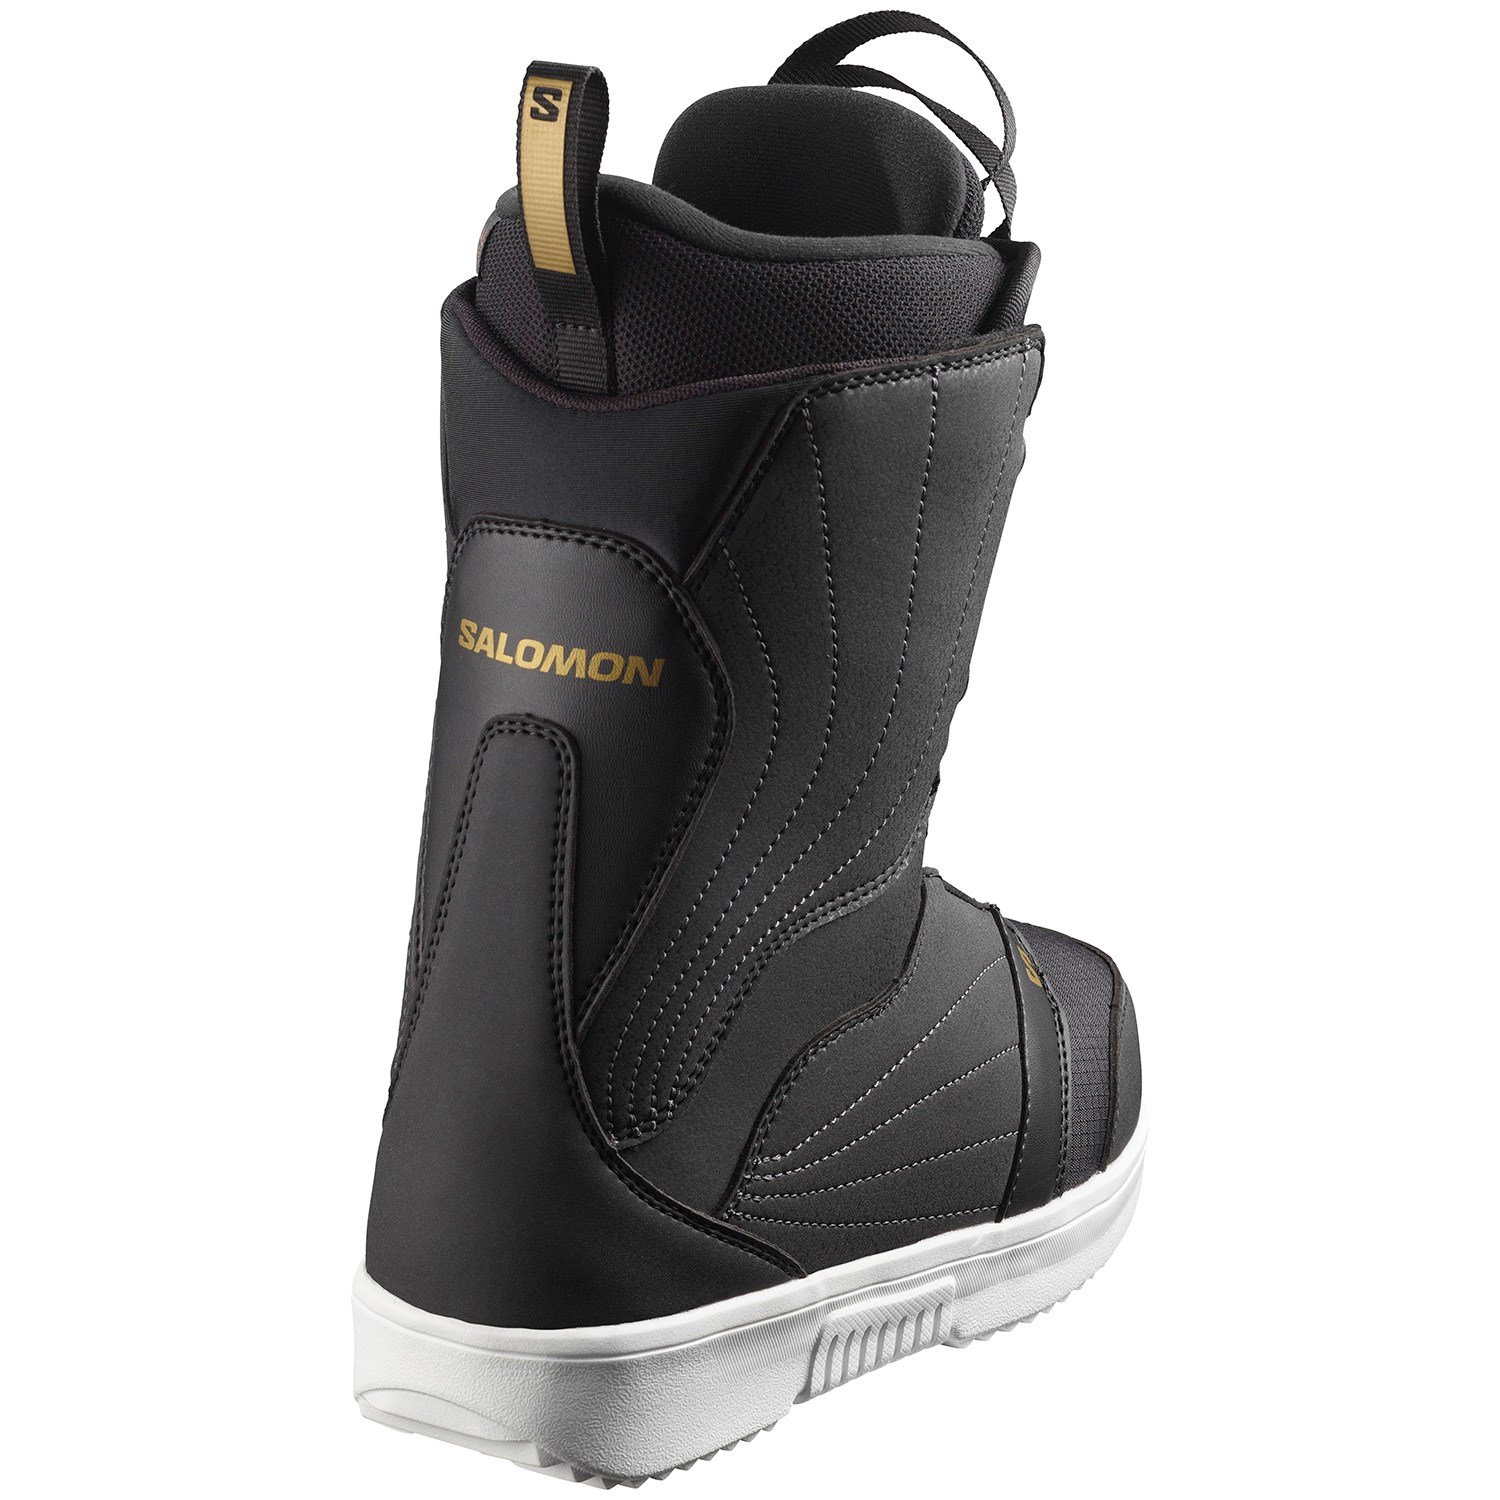 Salomon Pearl Womens Black Size 7.5 Boa Snowboard Boots 